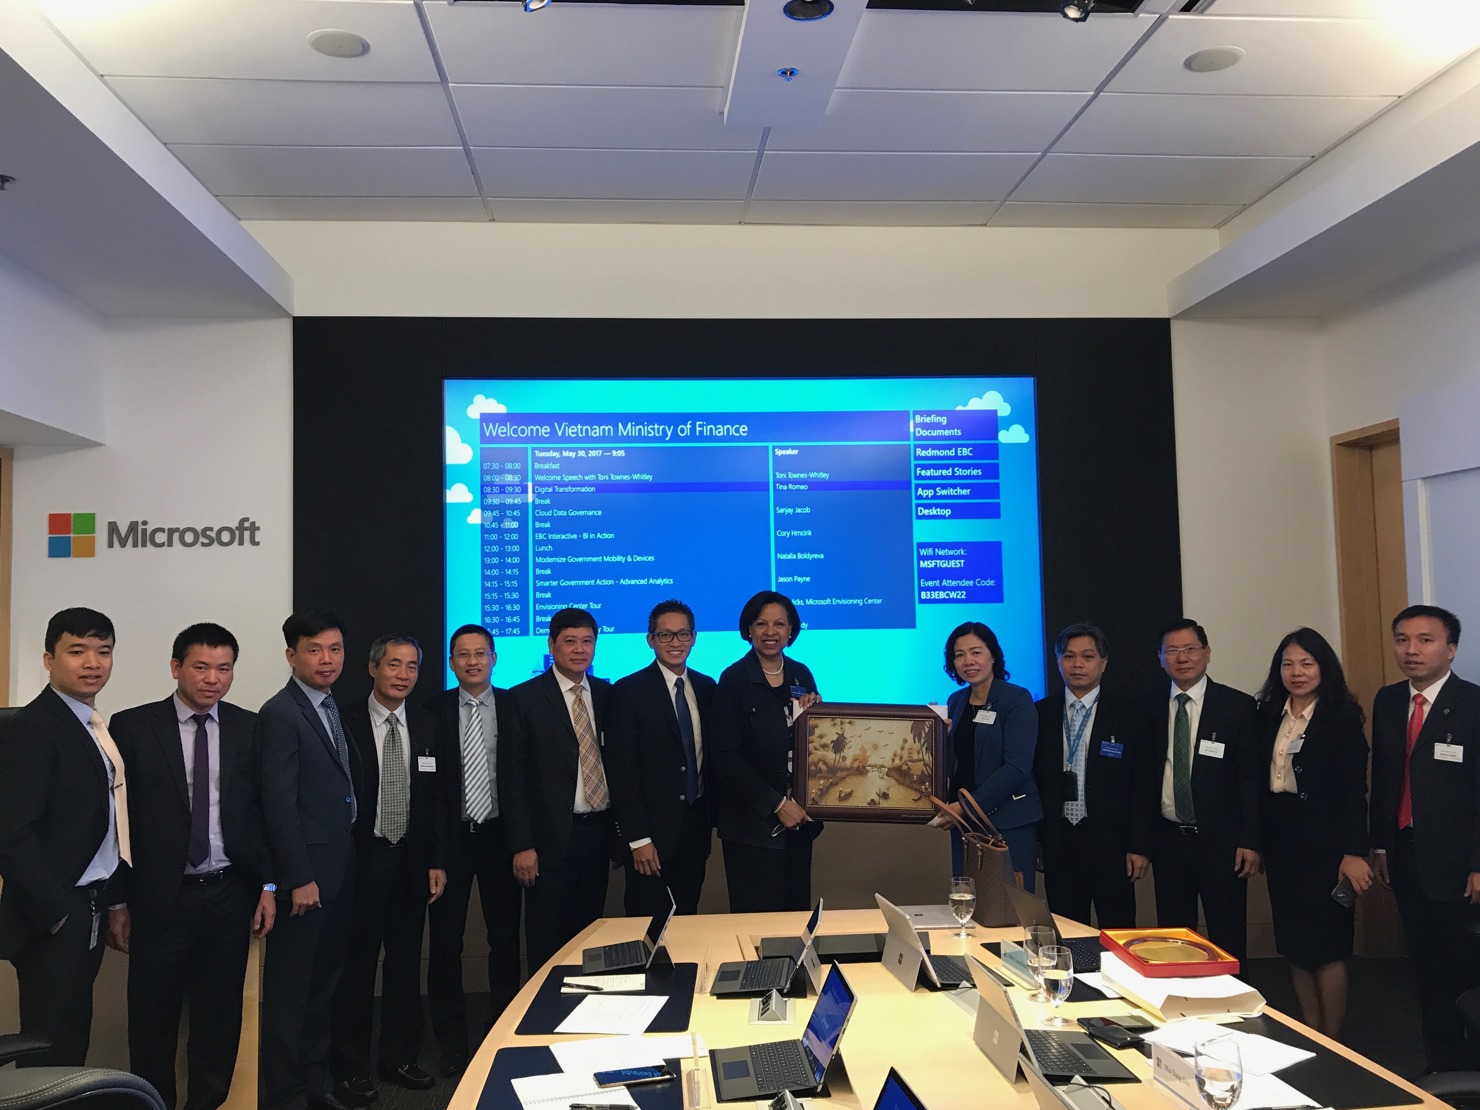 Đoàn công tác cấp cao của Bộ Tài chính Việt Nam và các lãnh đạo hãng MicroSoft tại Hoa Kỳ